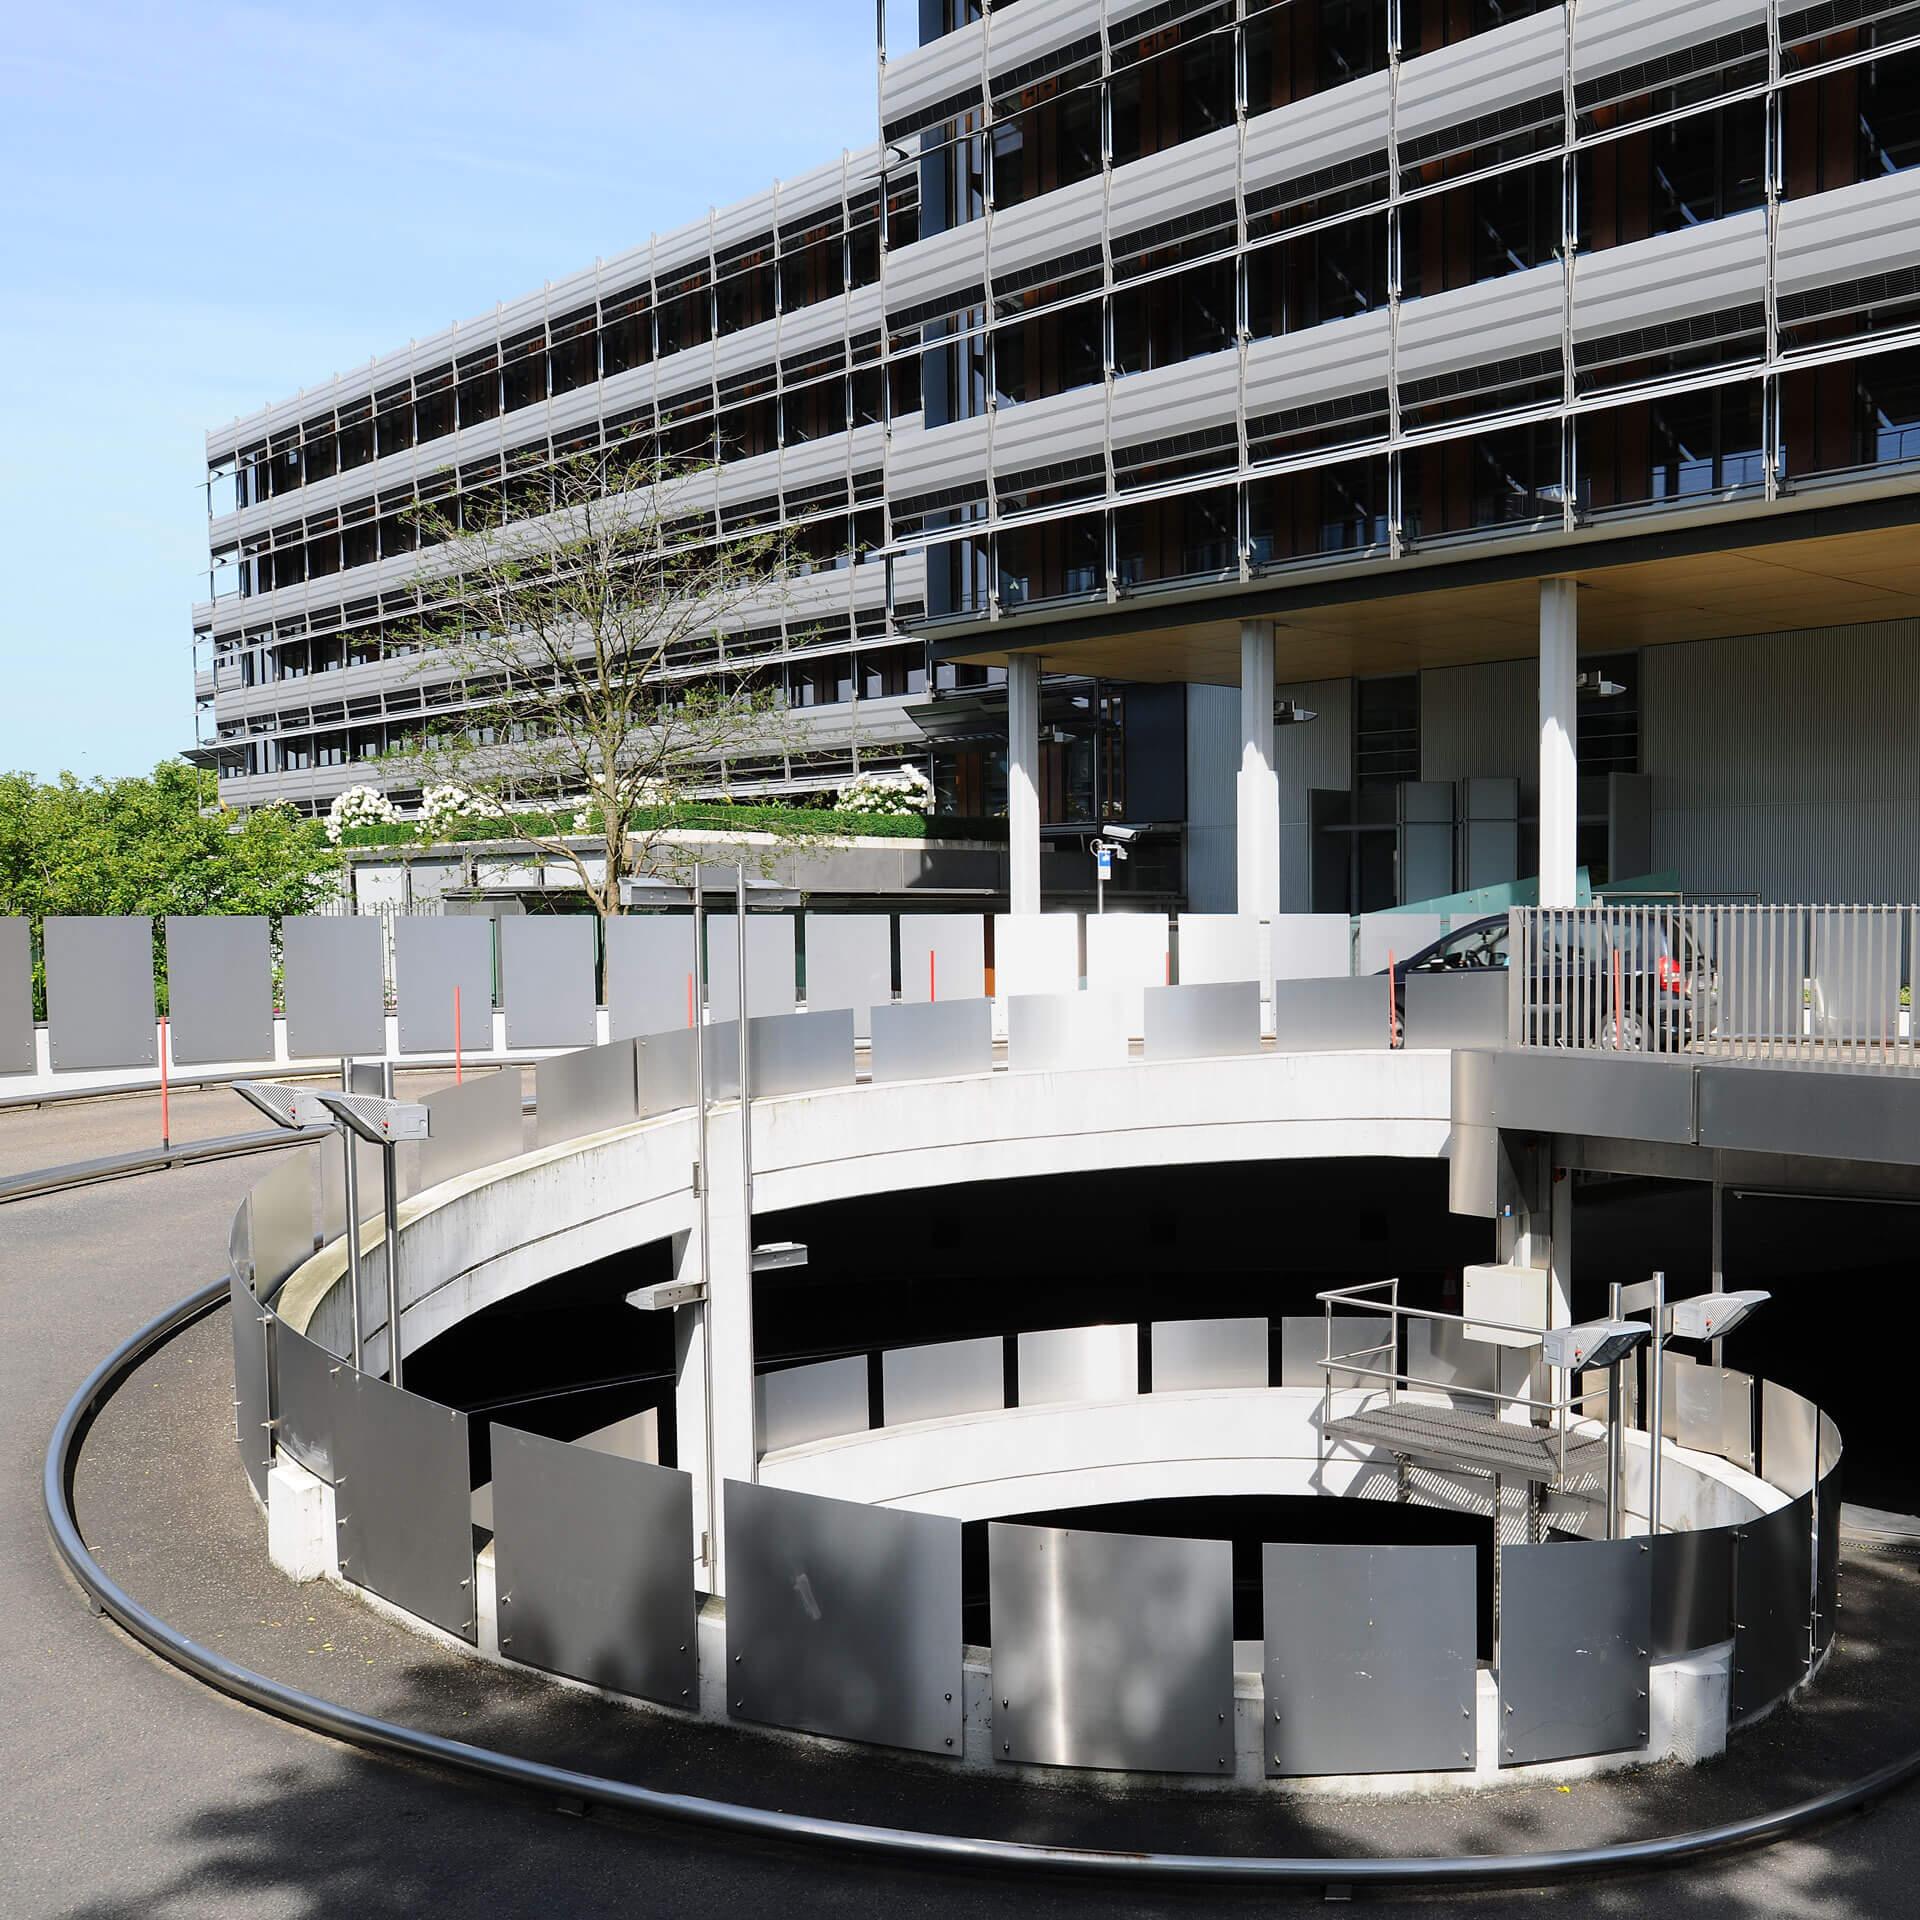 SOKA-BAU - spiralförmige Garageneinfahrt und zwei moderne Bürogebäude, Baum und Sträucher